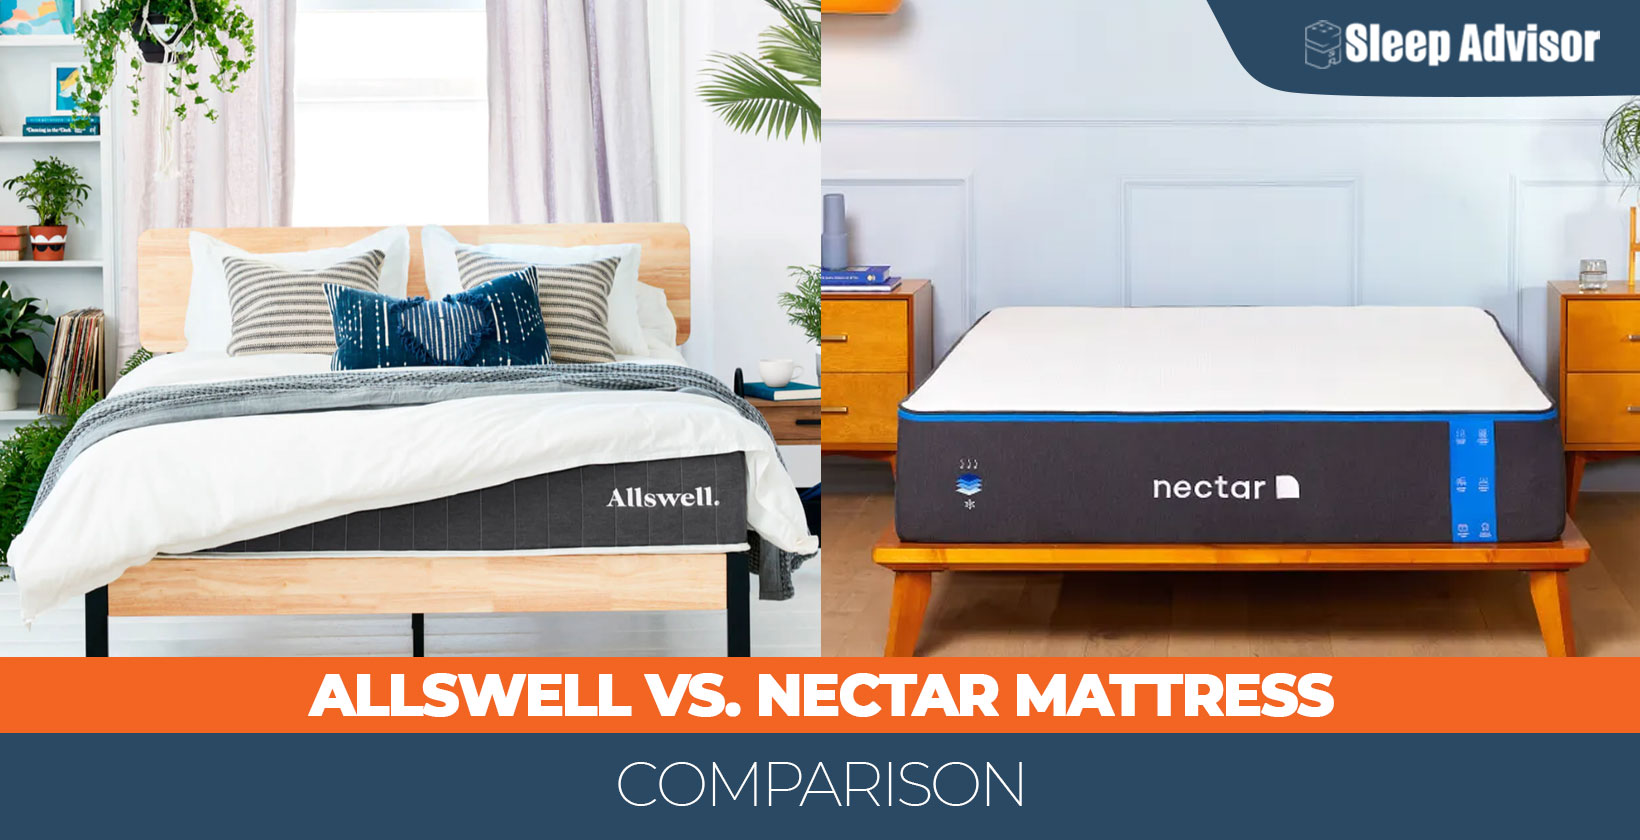 Allswell vs. Nectar mattress comparison